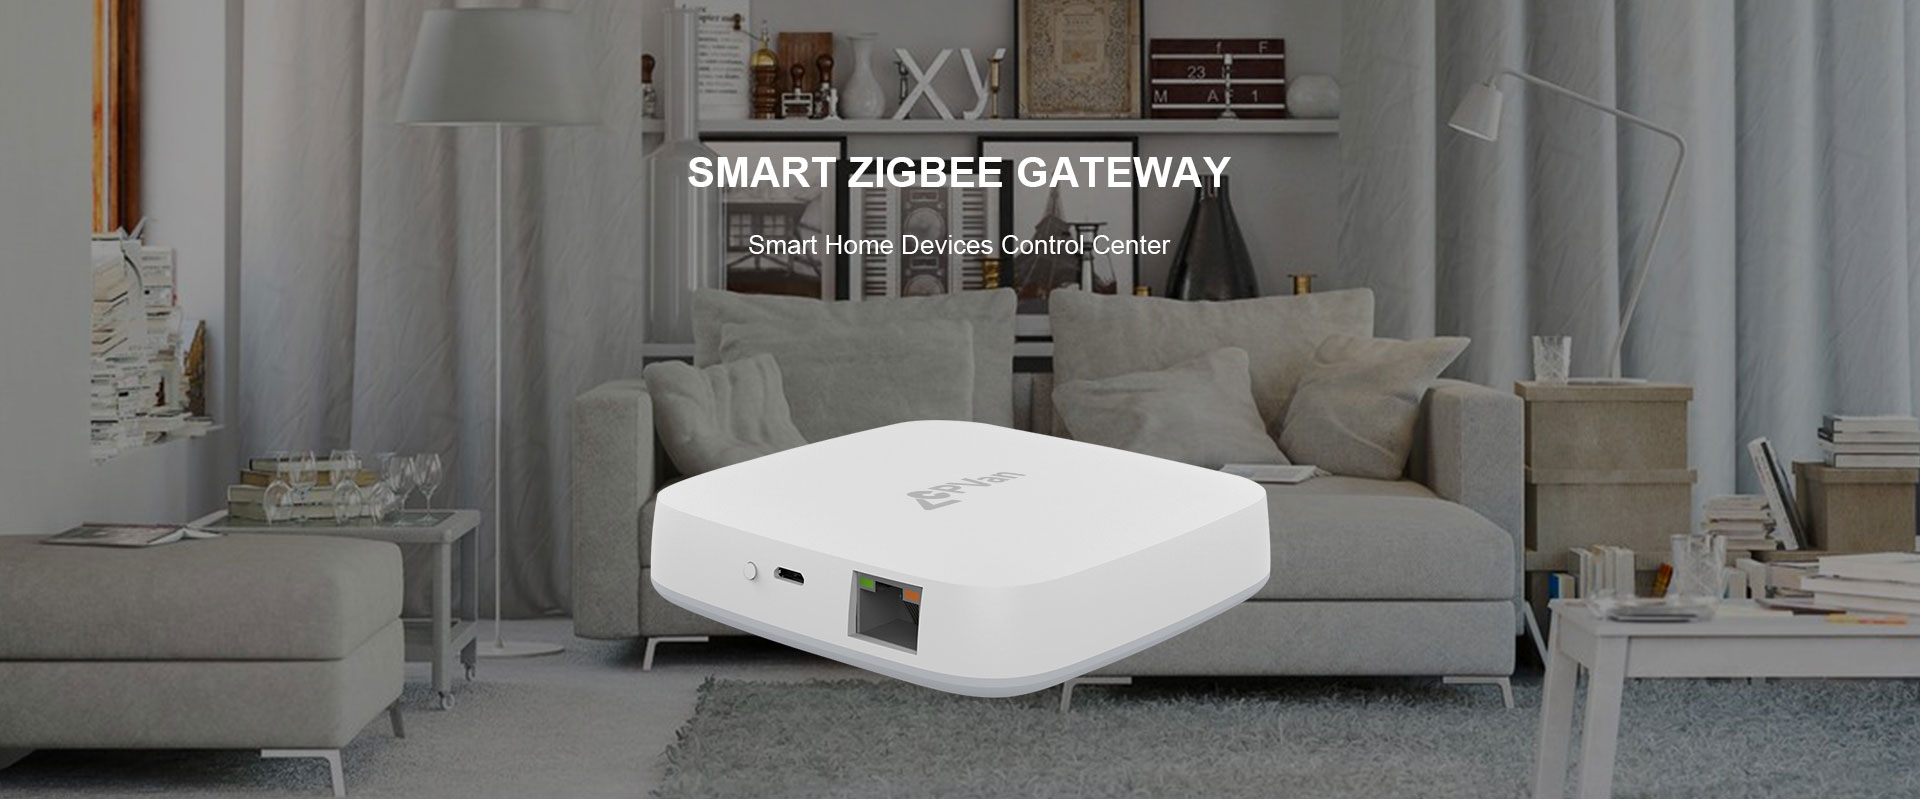 Zigbee 3.0 Gateway